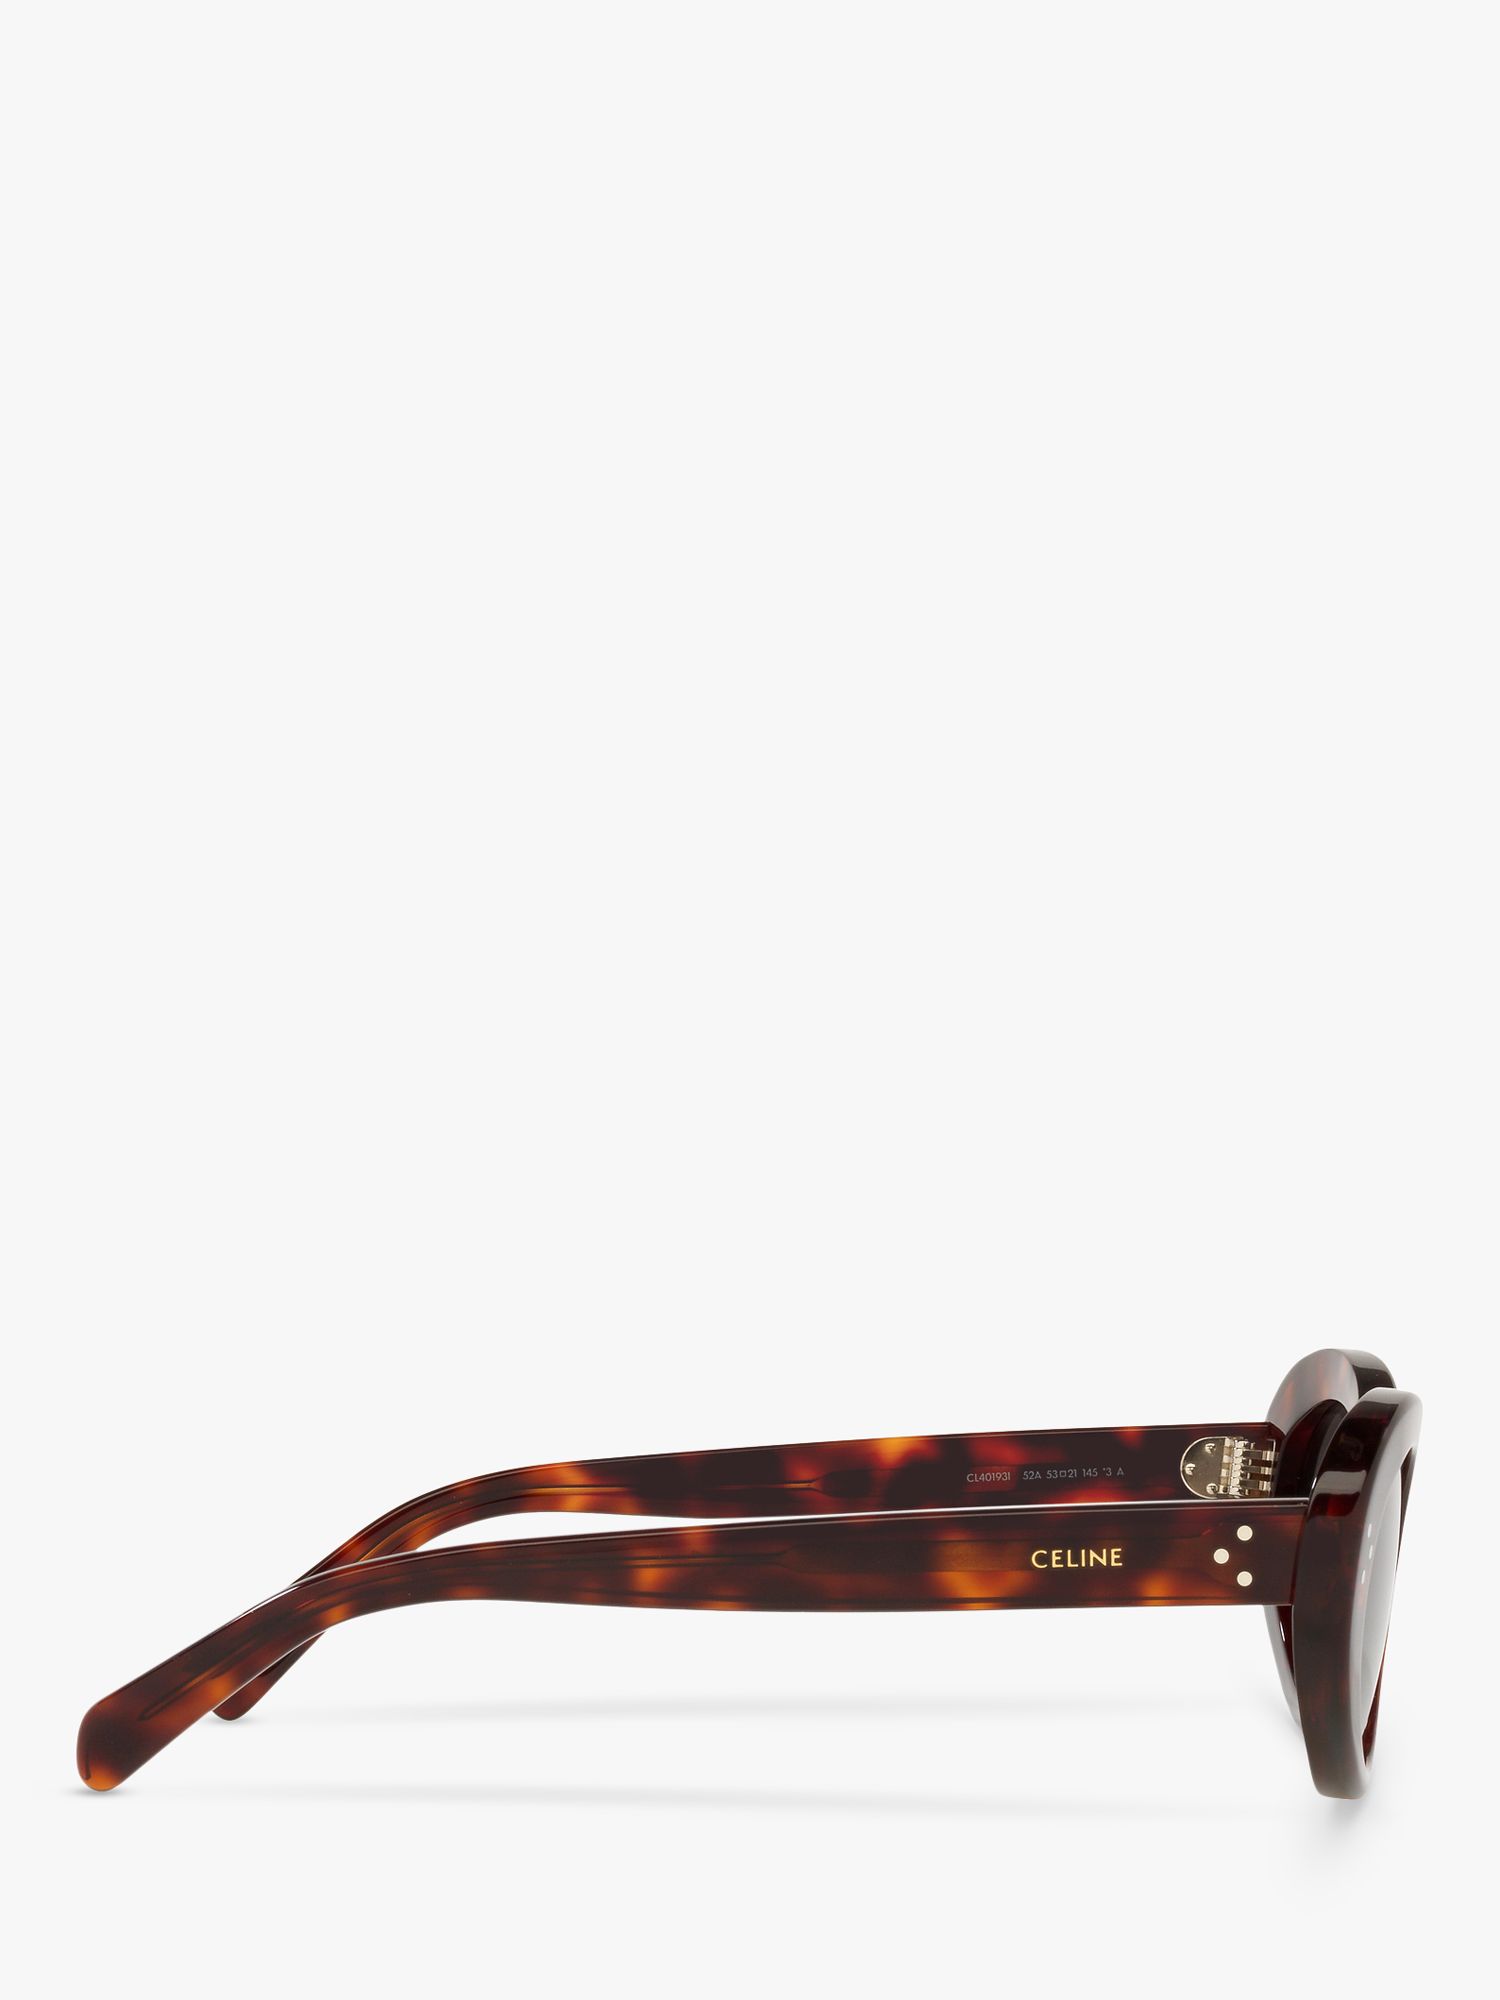 Buy Celine CL40193I Women's Cat's Eye Sunglasses, Black Tortoise/Grey Online at johnlewis.com